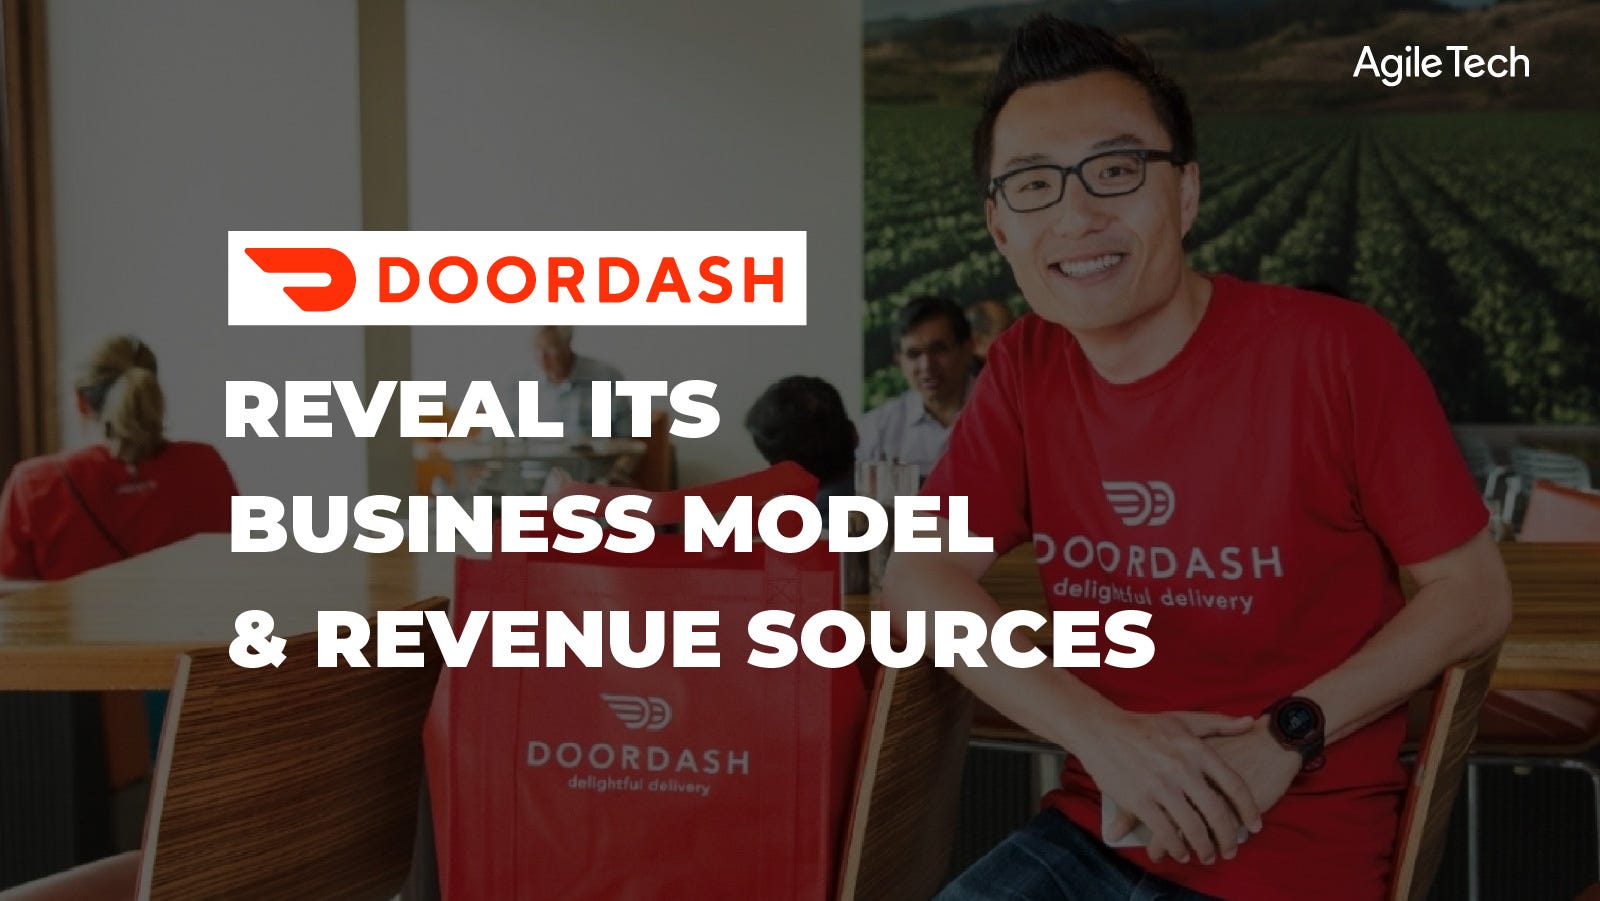 How Does DoorDash Work?